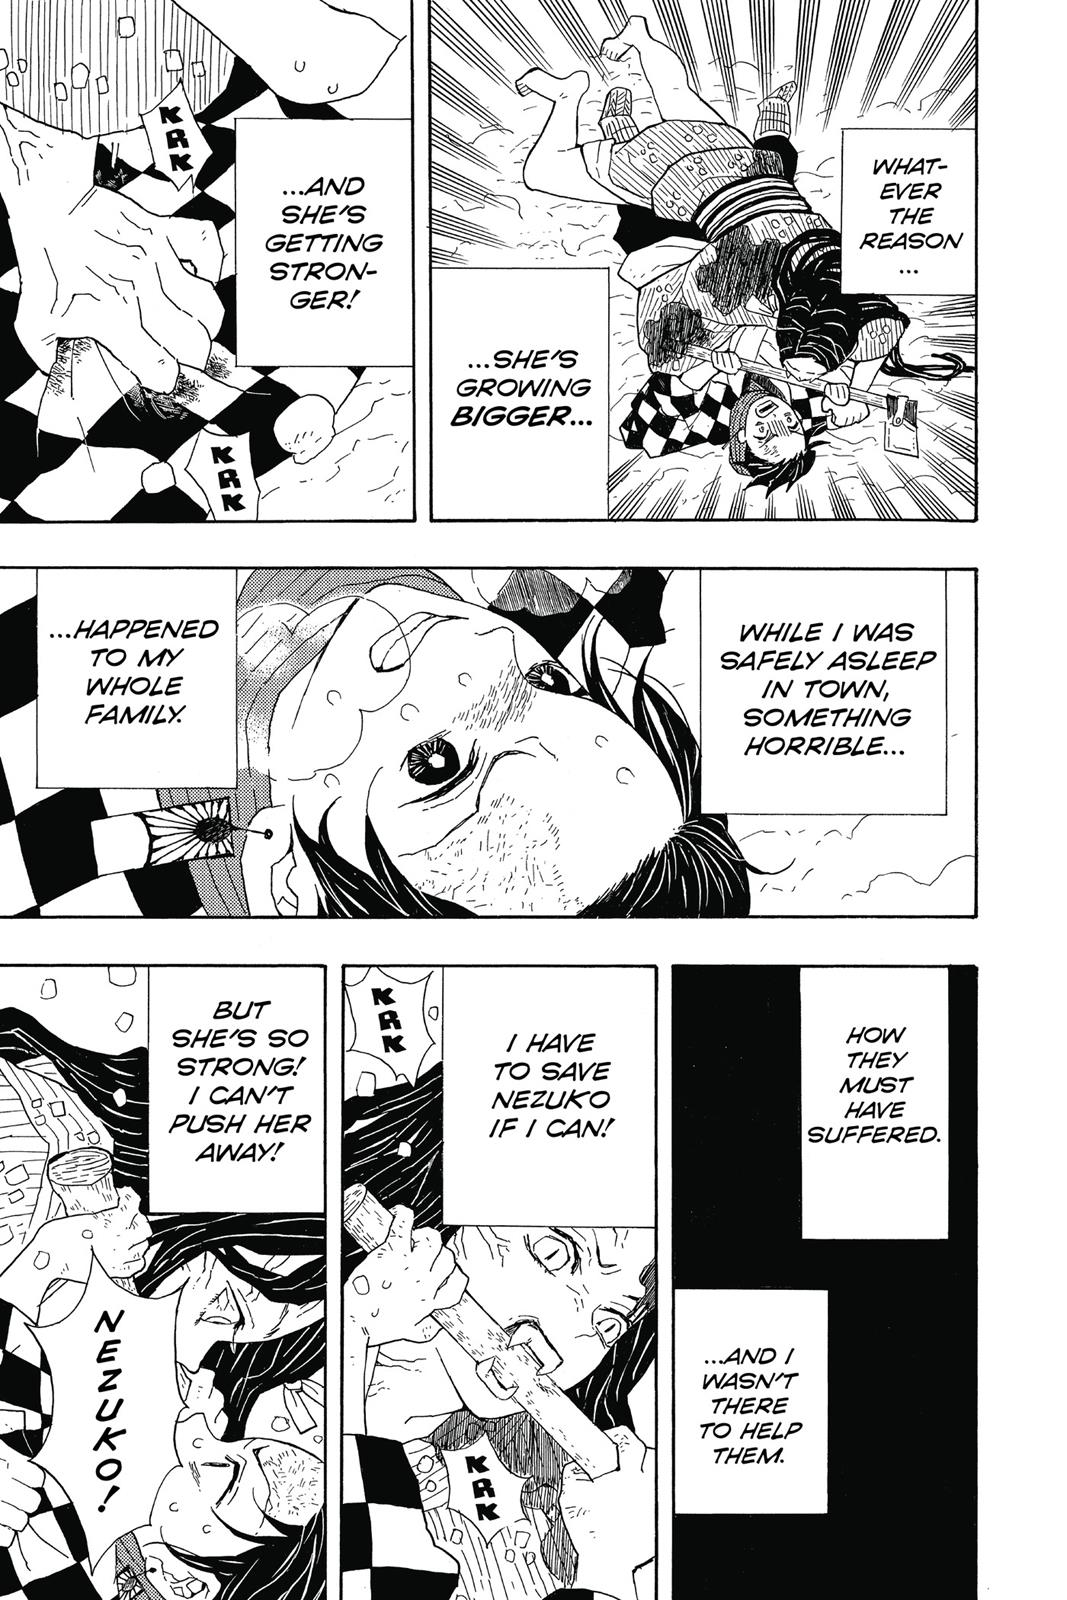 Demon Slayer Manga Manga Chapter - 1 - image 13